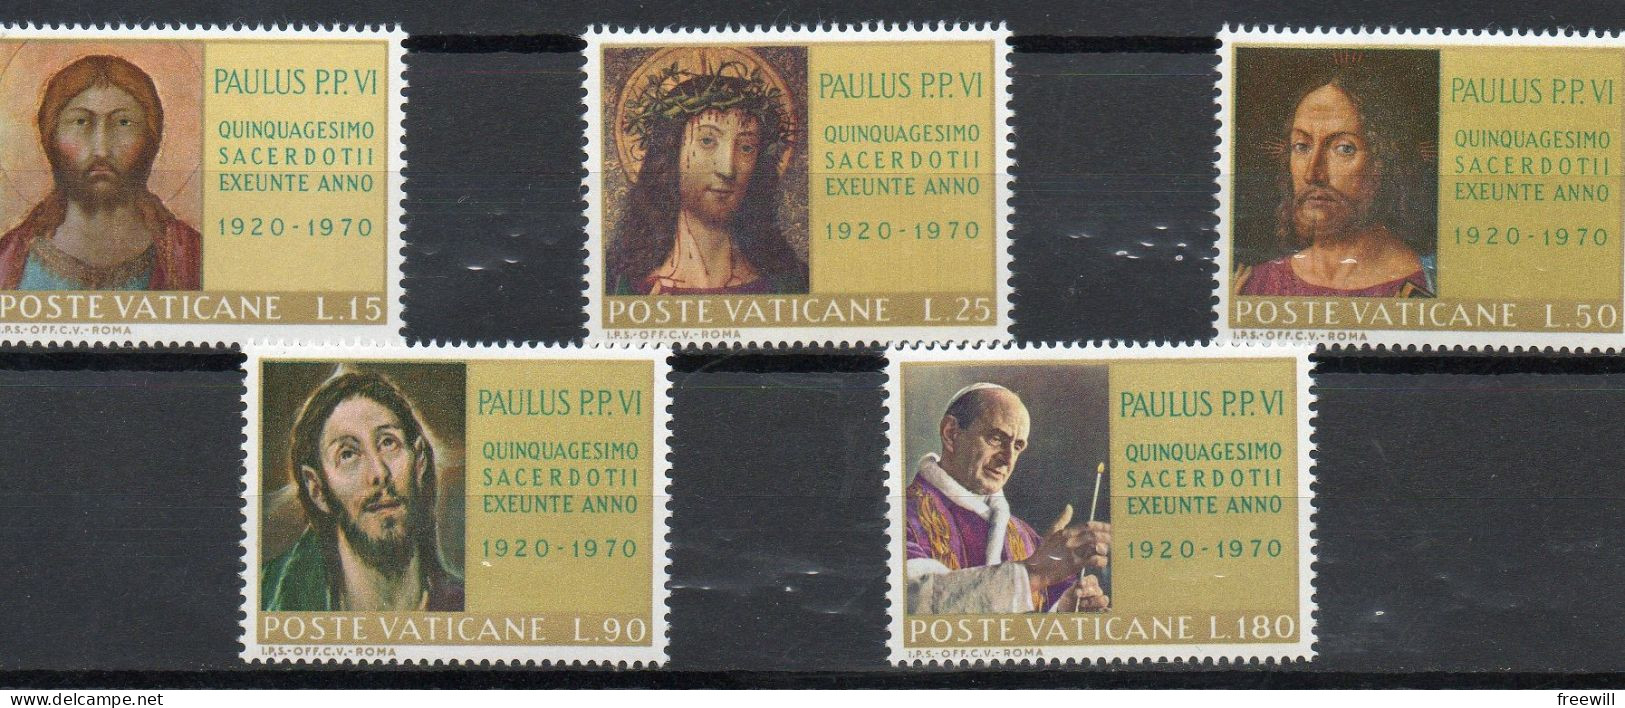 Jubilé Du Pape Paul VI XXX 1970 - Unused Stamps